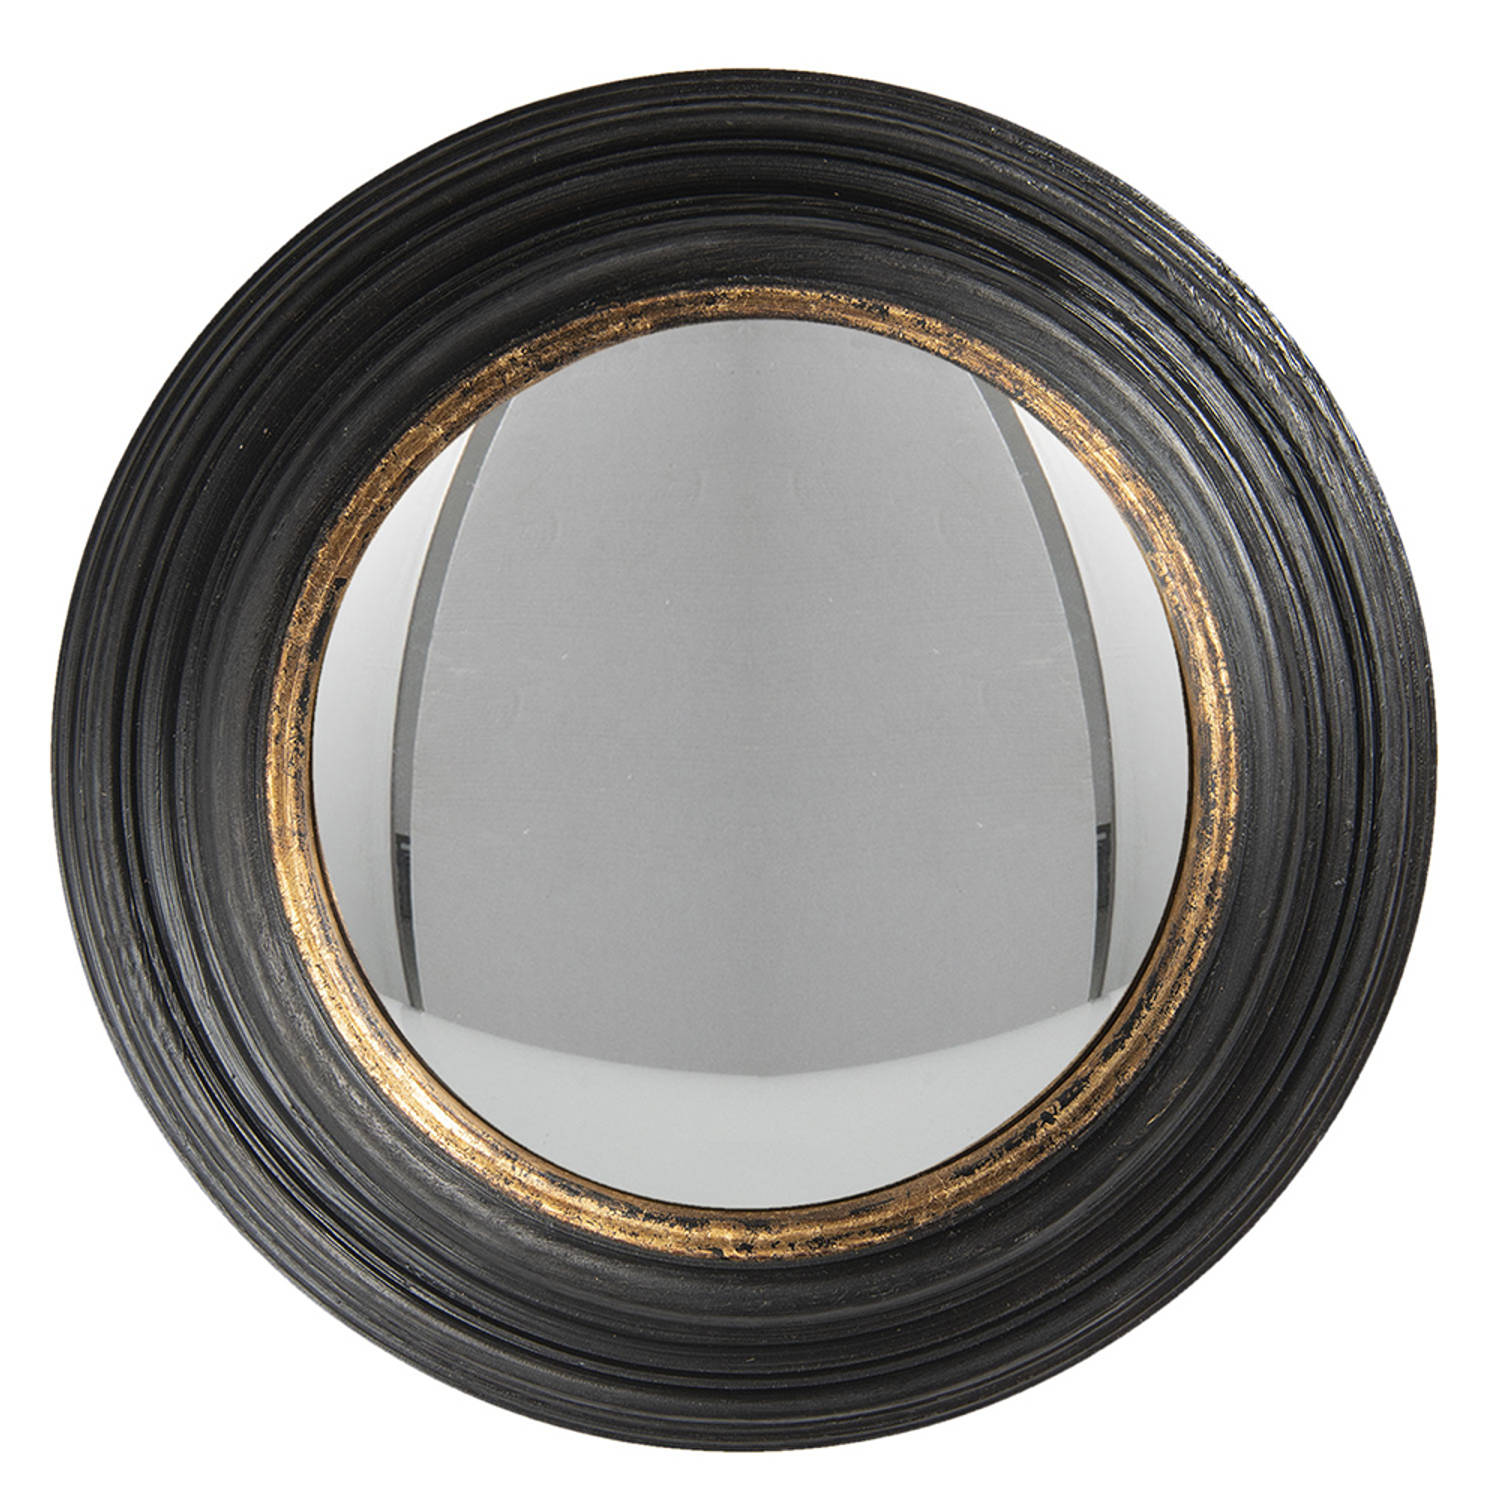 HAES DECO - Bolle ronde Spiegel - Kleur Zwart - Formaat Ø 38x4 cm - Materiaal Polyurethaan ( PU) - Wandspiegel, Spiegel rond, Convex Glas